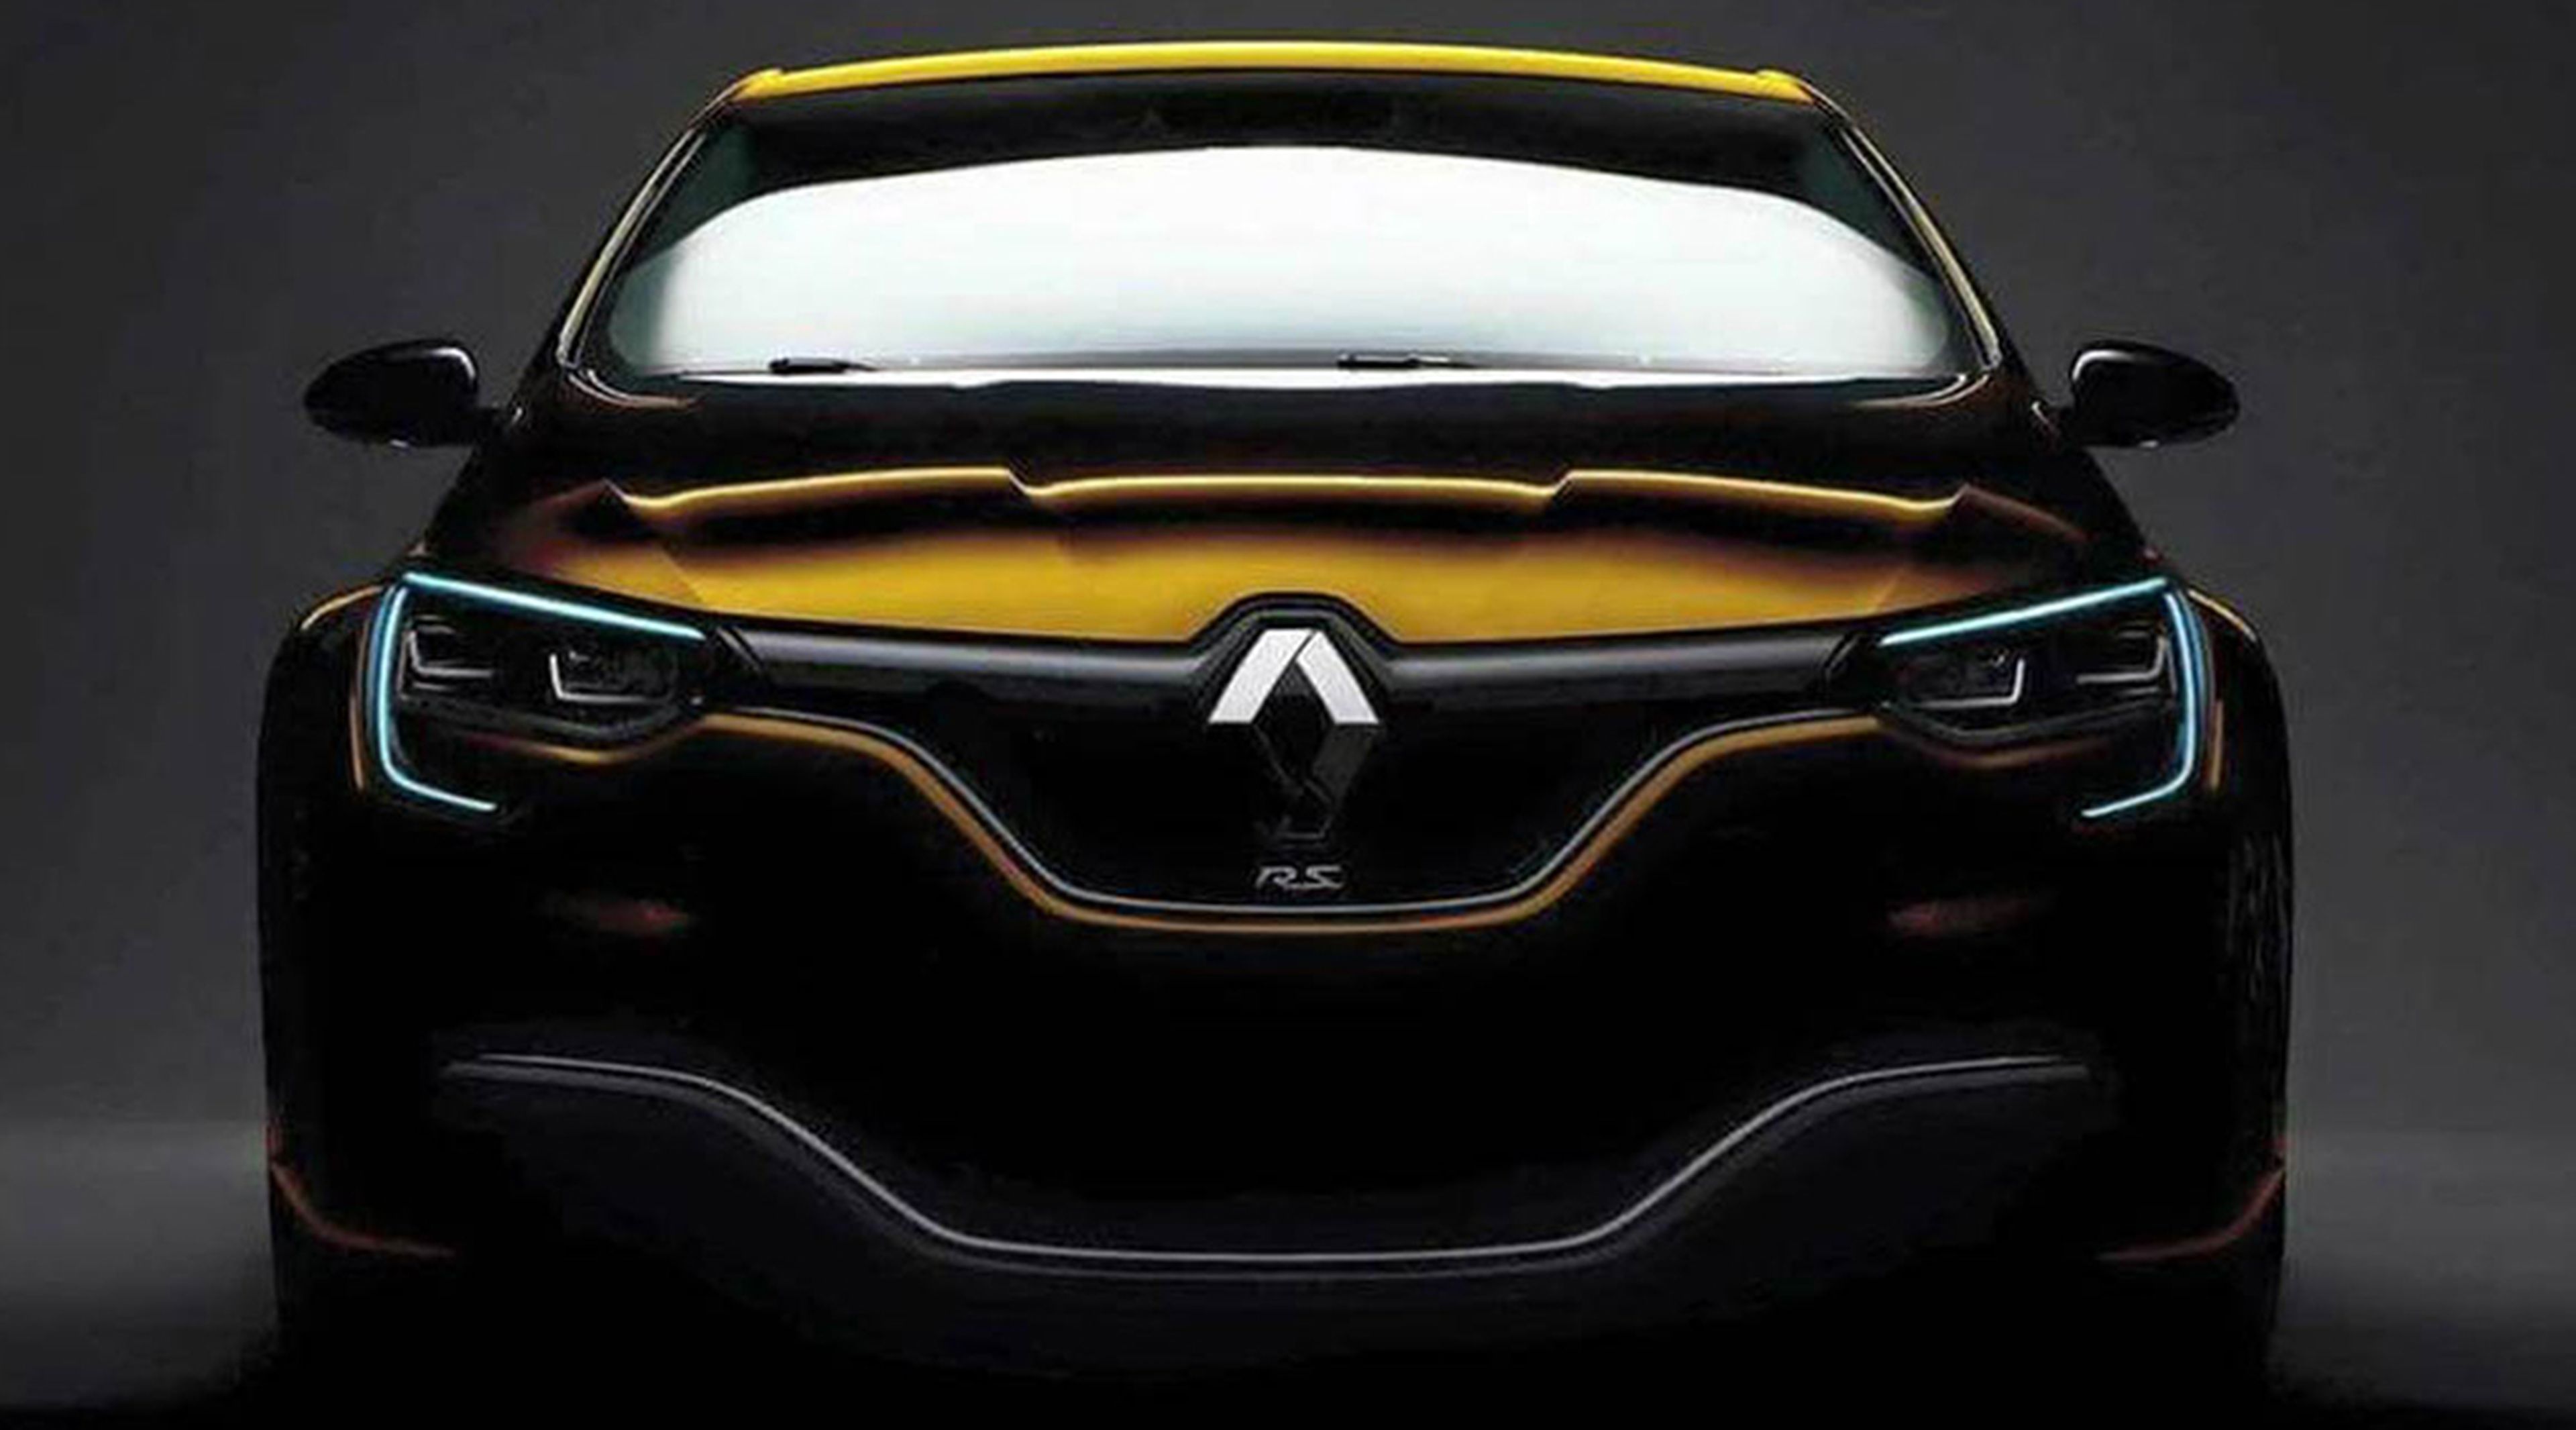 El nuevo Renault Megane RS podría tener este aspecto